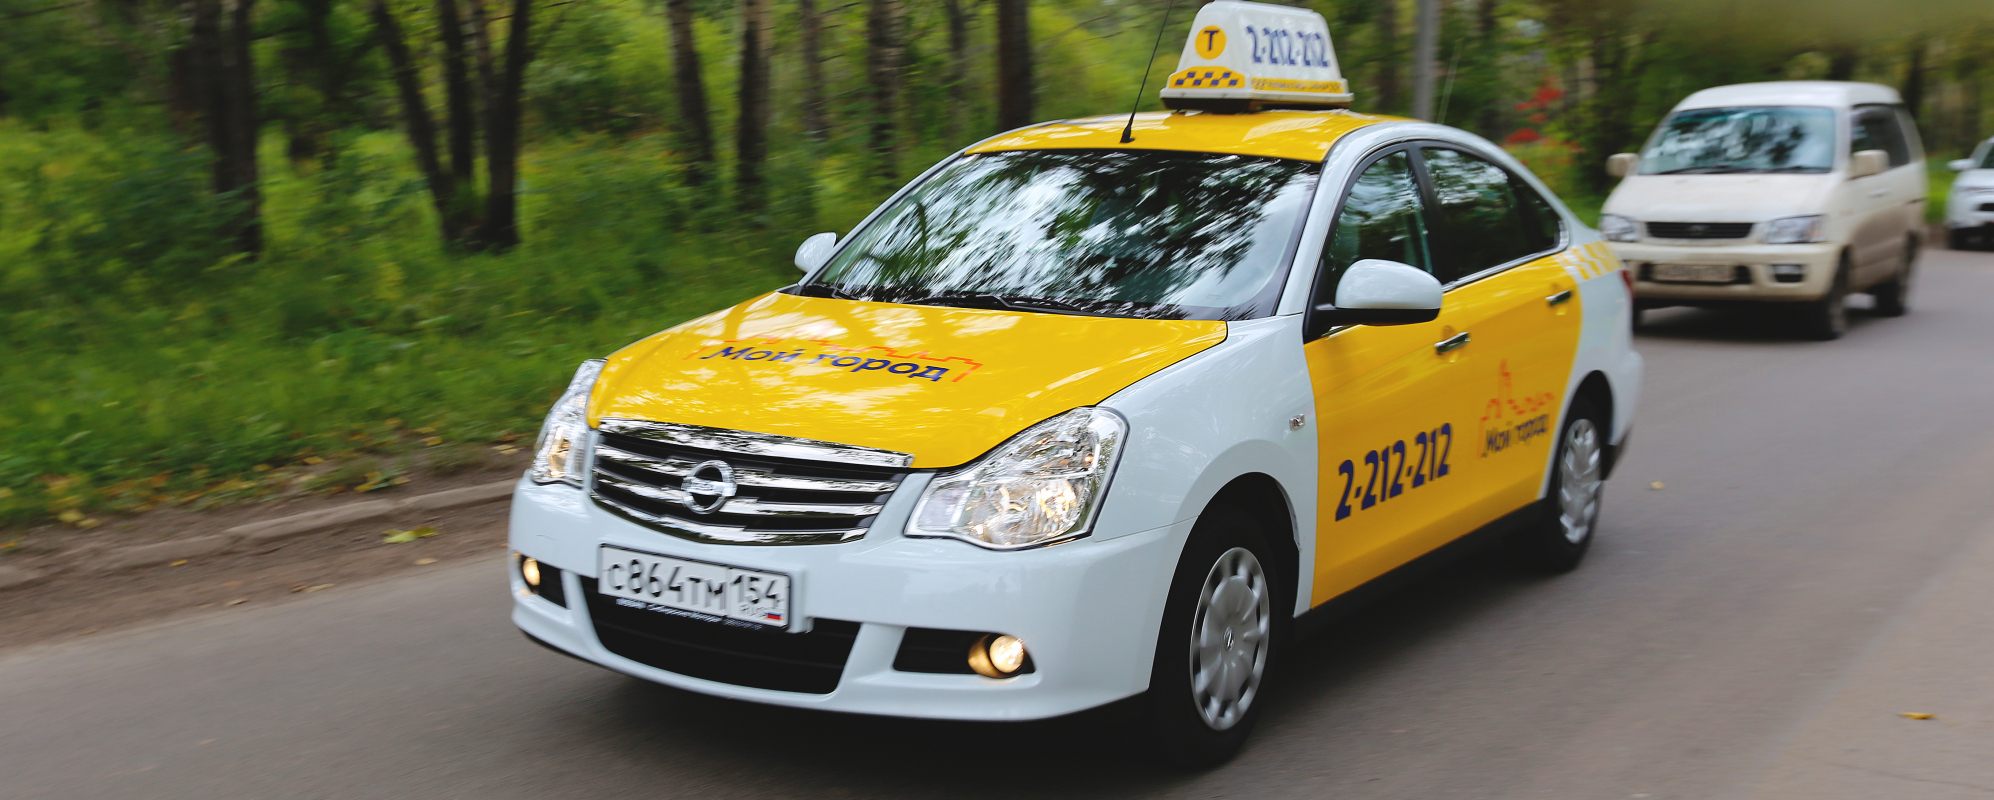 Сколько такси в новосибирске. Такси Новосибирск. Такси в городе. Такси НСК. Машина такси в городе.